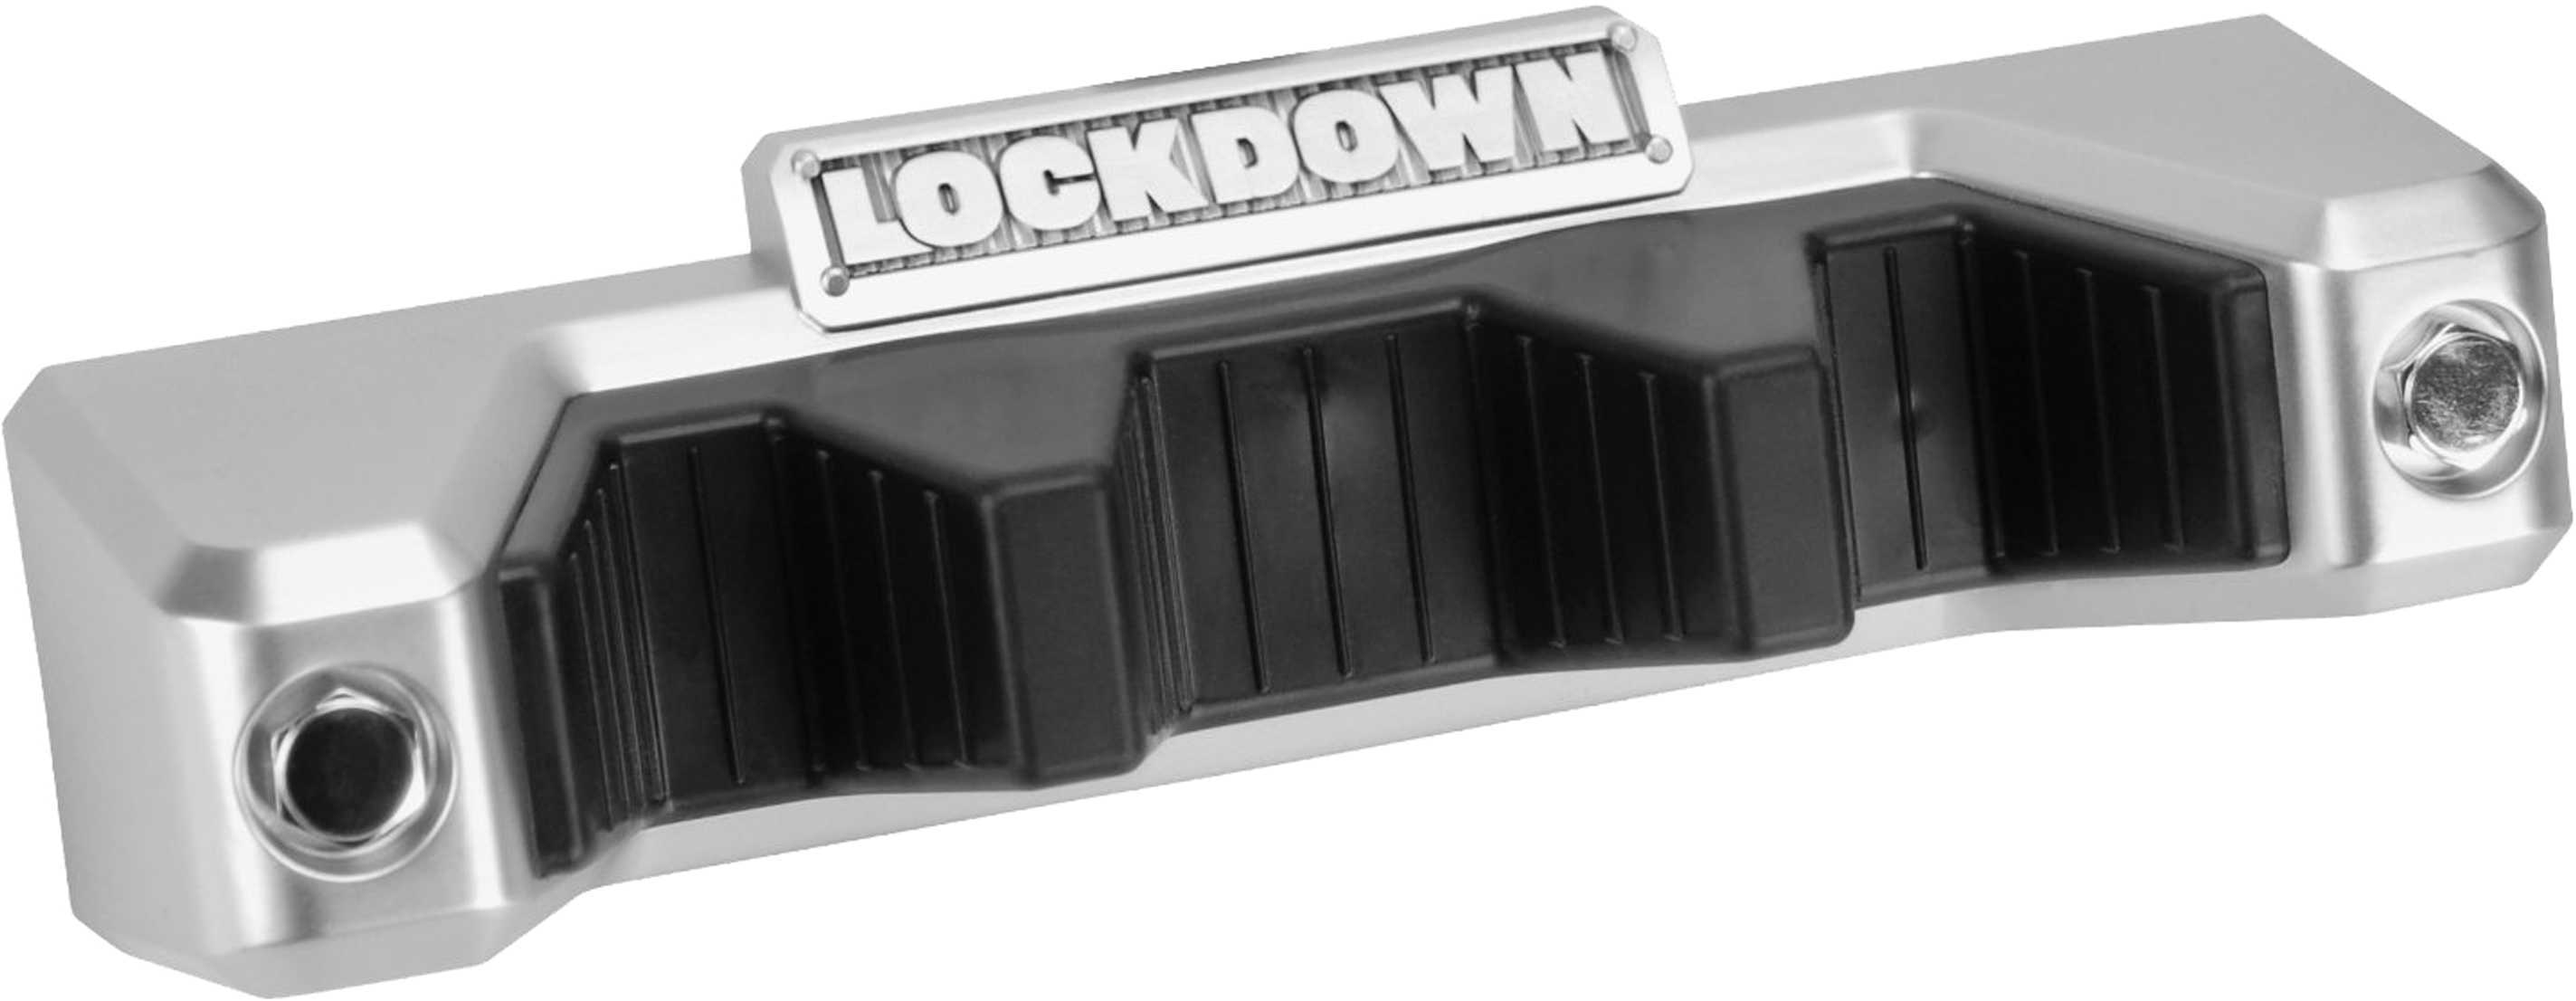 Lockdown Magnetic Barrel Rest